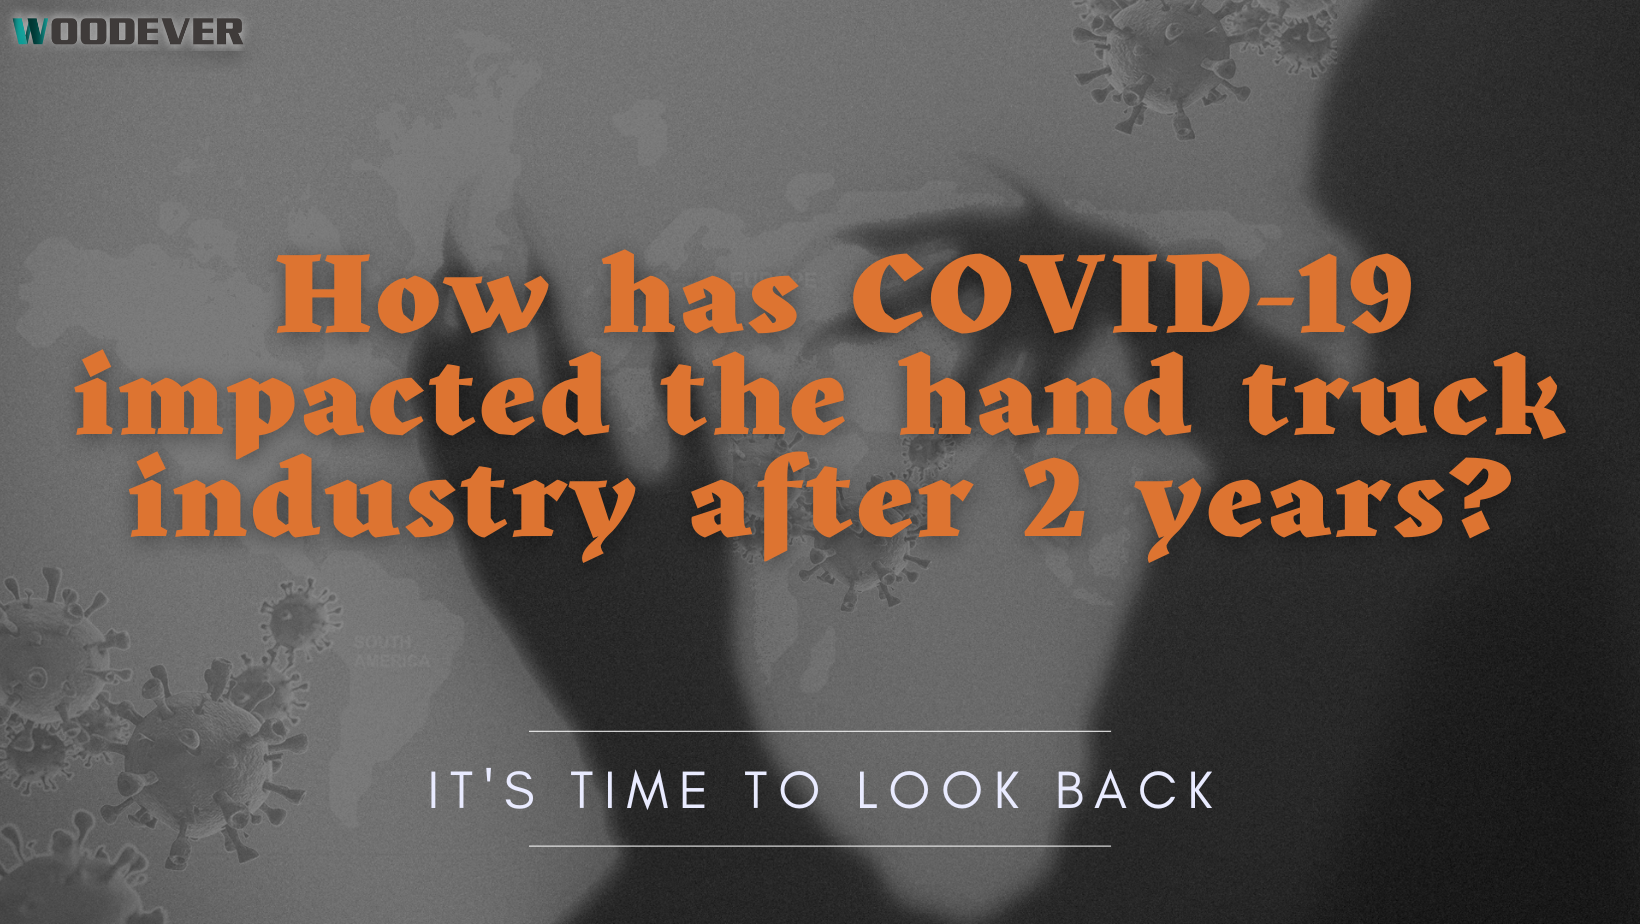 ผลกระทบ - ขาดแรงงาน การขัดขวางการผลิต และปิดกิจการธุรกิจ ตั้งแต่ไวรัส COVID ครอบคลุมโลกในปี 2019 ตลาดรถเข็นก็ประสบการหยุดชะงักเนื่องจากการระบาดของโรคระบาด ตามสถิติของ Statista รายได้รวมทั่วโลกสำหรับตลาดรถเข็นในปี 2019 ประมาณ 3.94 ล้านล้านดอลลาร์สหรัฐ ลดลงจากมูลค่า 5.4 ล้านล้านดอลลาร์สหรัฐในปี 2014 COVID-19 มีผลกระทบอย่างมากต่อทุกด้านของอุตสาหกรรมรถแม็กซ์มือ, โดยเฉพาะการปิดกิจการธุรกิจ, ความขาดแคลนของพนักงาน, การขัดขวางกระบวนการ, และการขนส่งสินค้า